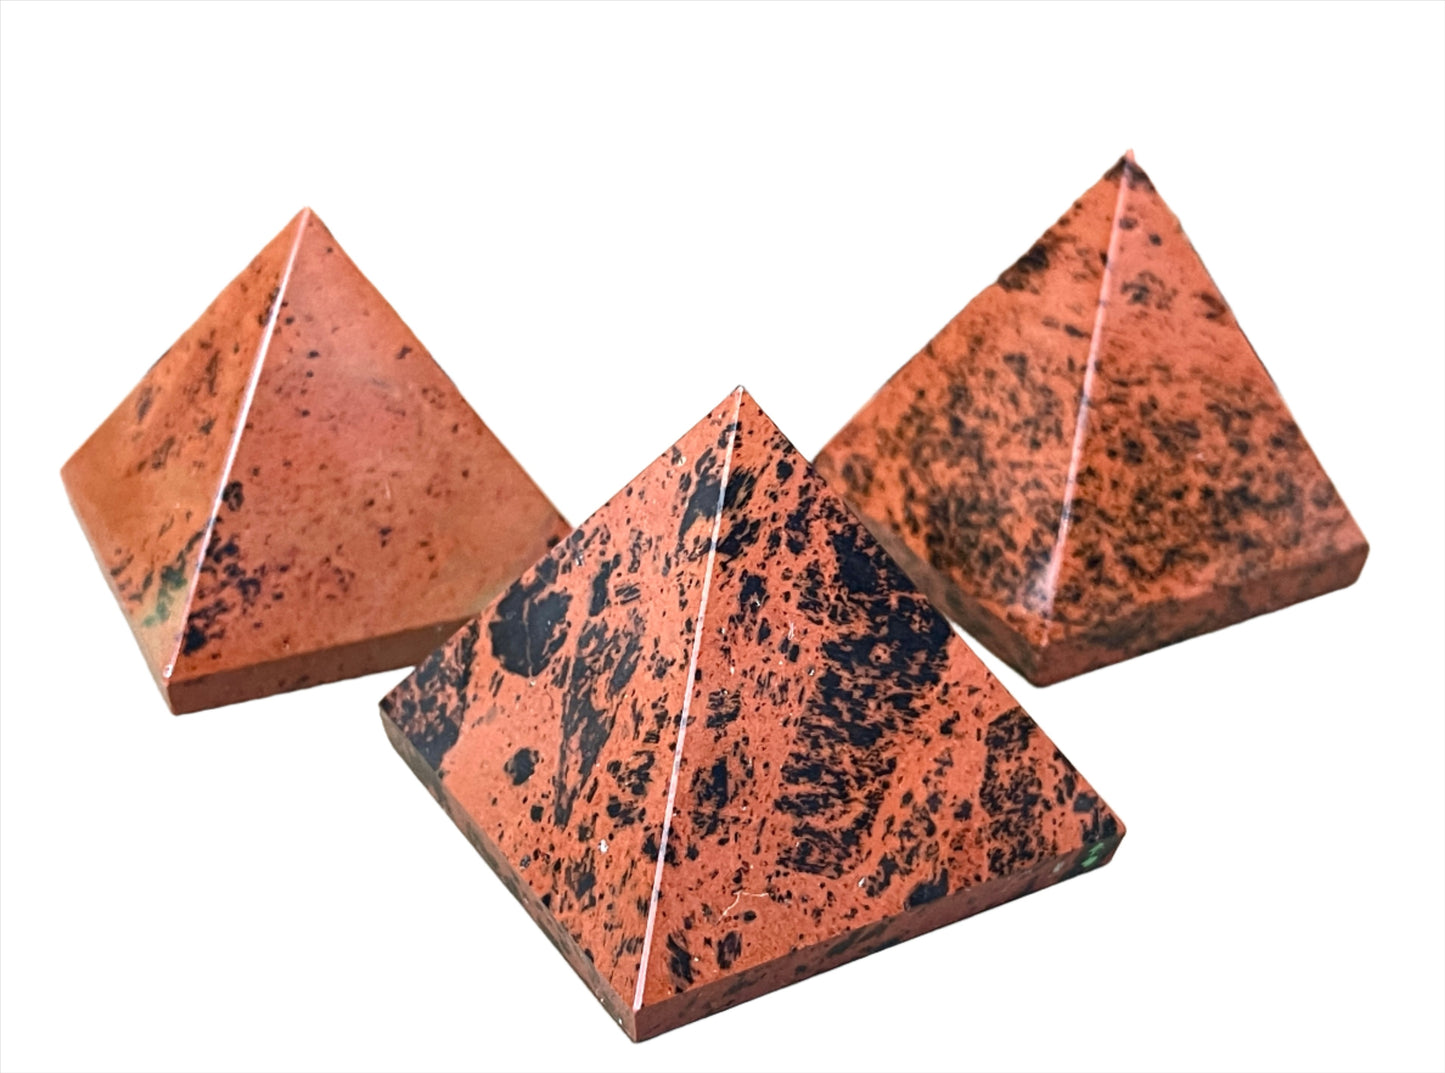 Mahogany Obsidian Pyramids